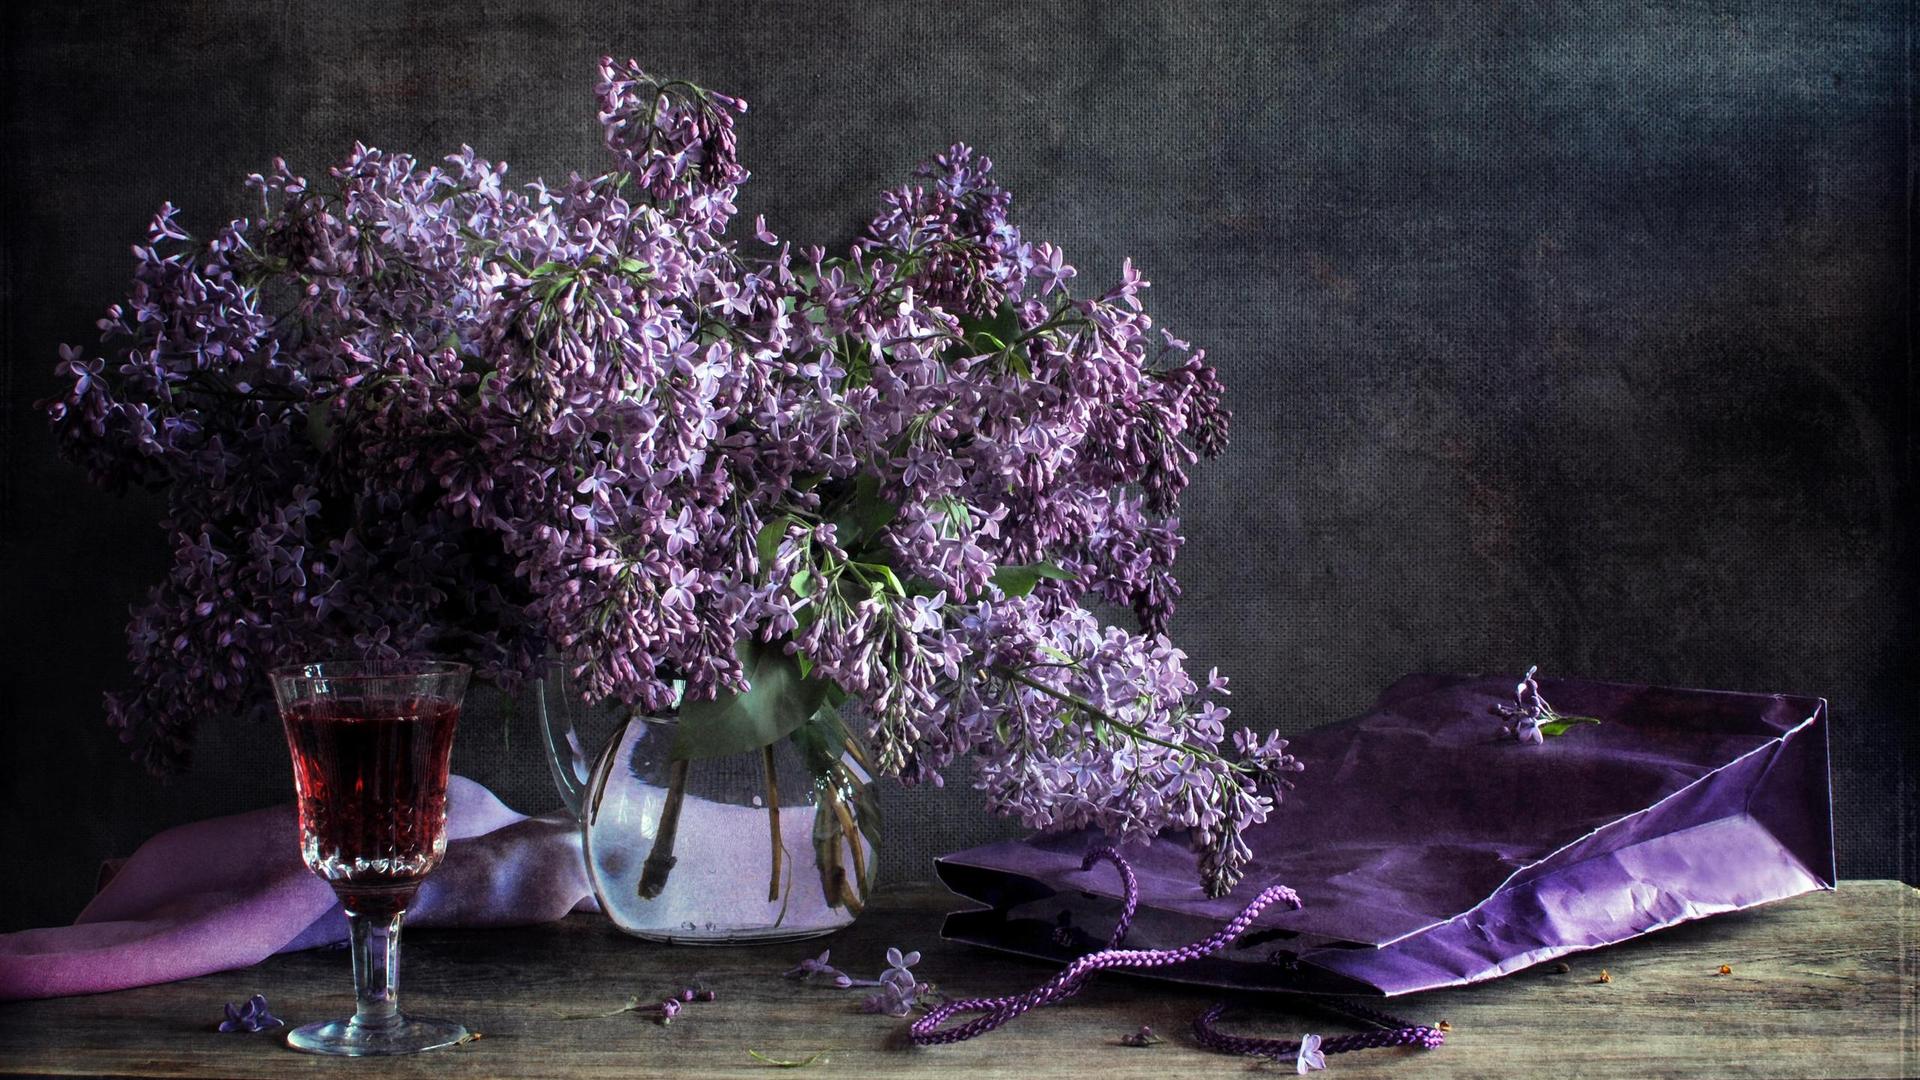 be still wallpaper,purple,lavender,lilac,still life photography,still life